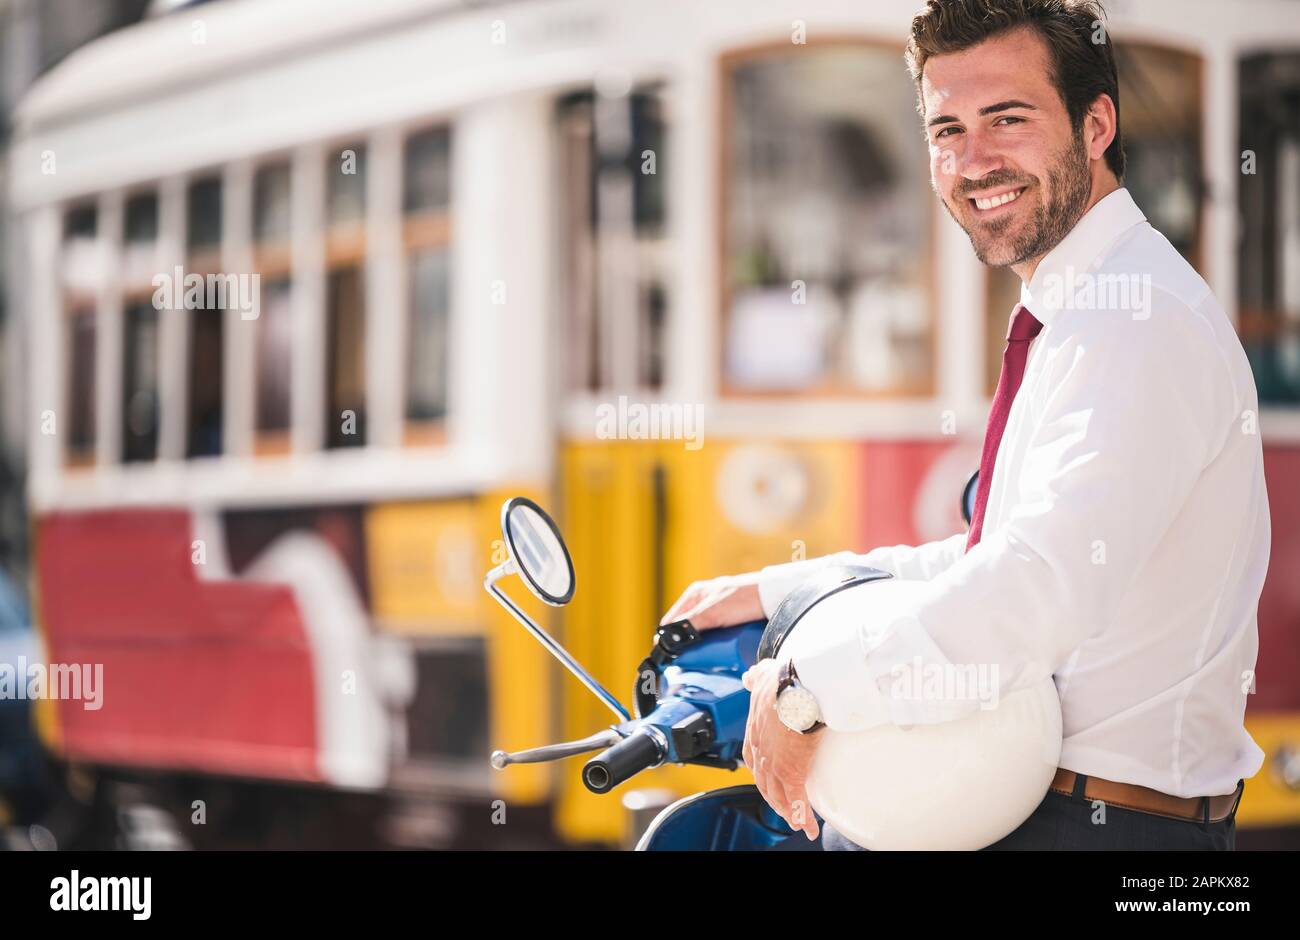 Portrait de jeune homme d'affaires souriant sur scooter automobile dans la ville, Lisbonne, Portugal Banque D'Images